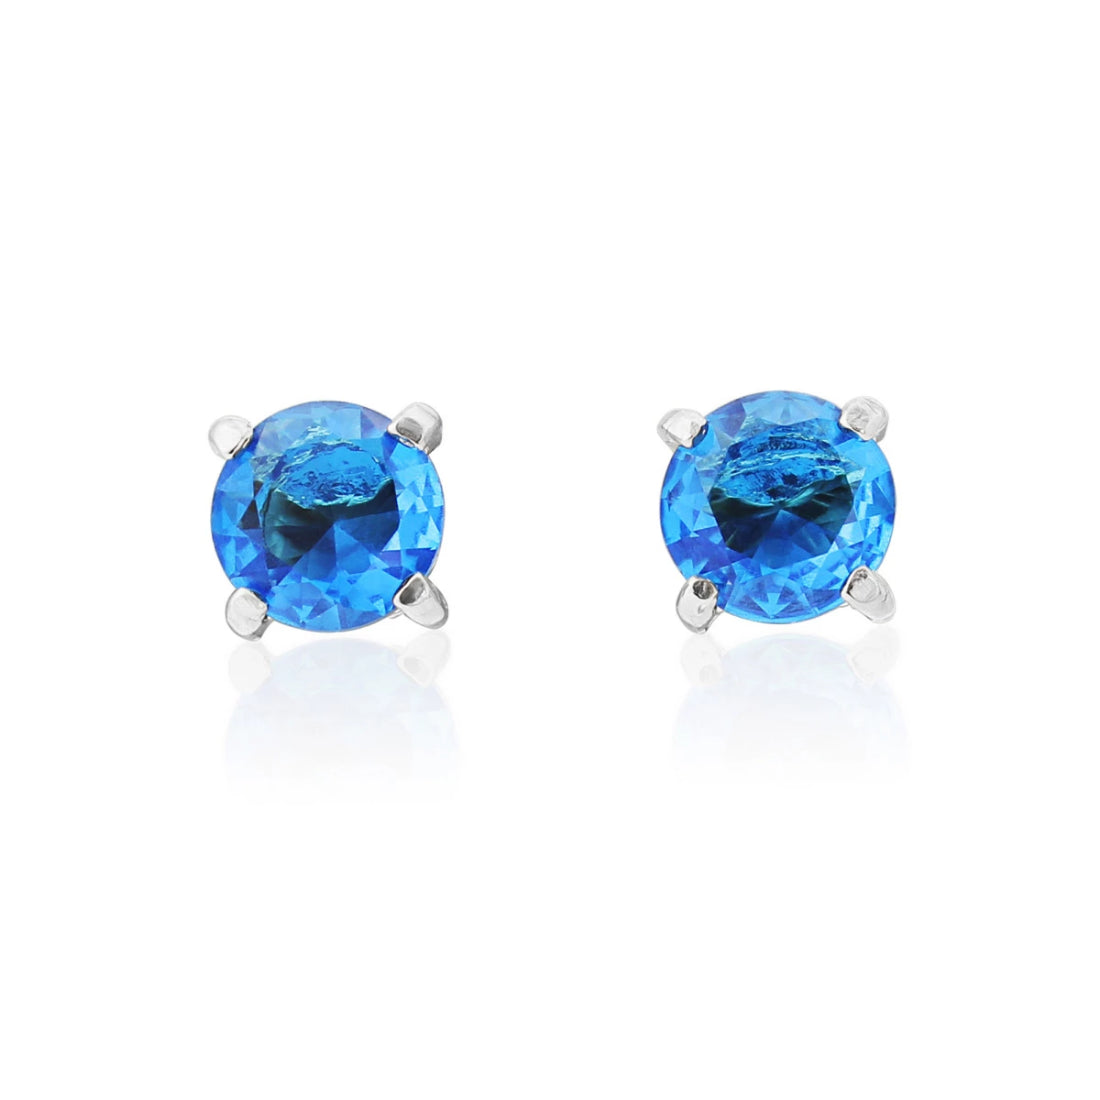 Enchanting Aqua Blue Stud Fashion Earrings